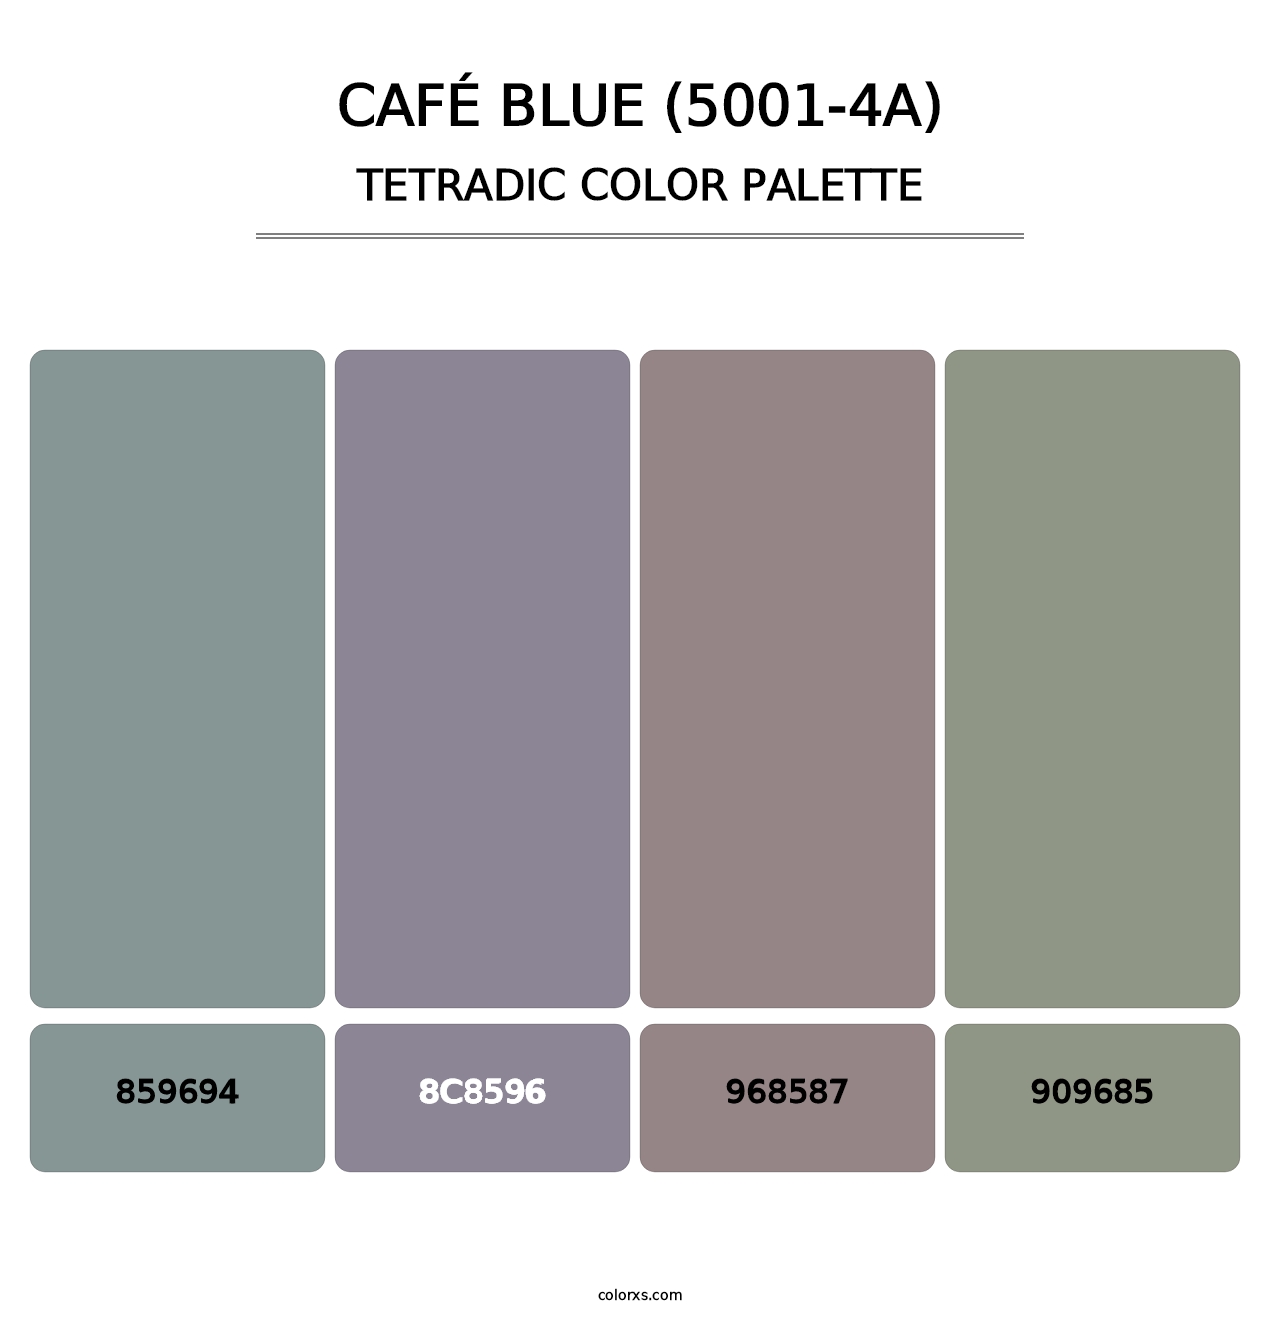 Café Blue (5001-4A) - Tetradic Color Palette